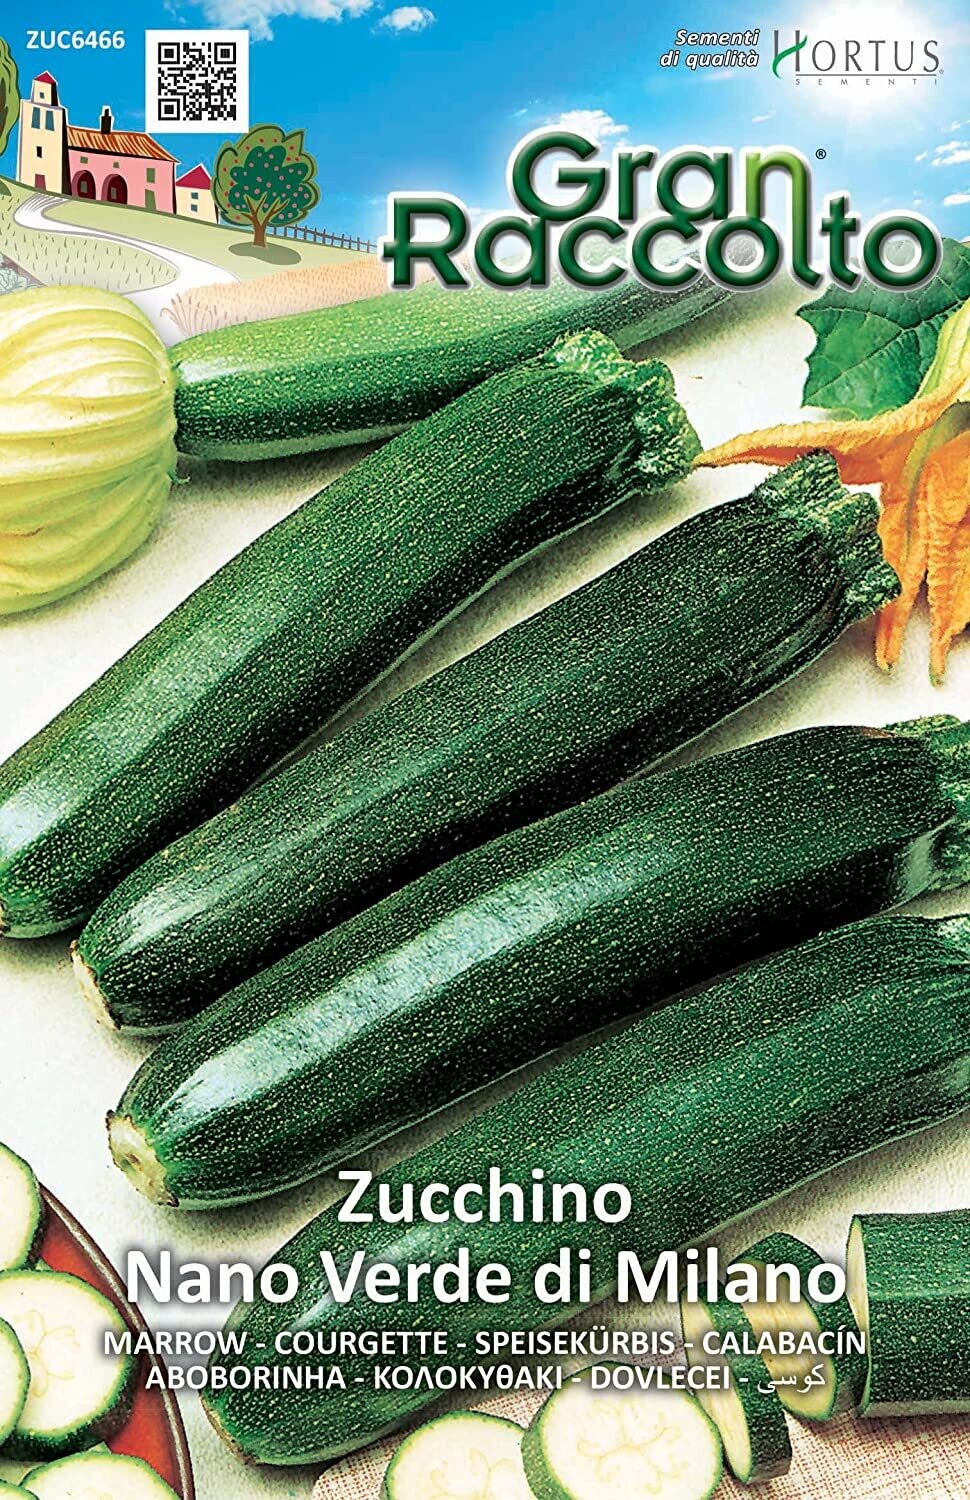 HORTUS Gran Raccolto Zucchino Nano Verde di Milano